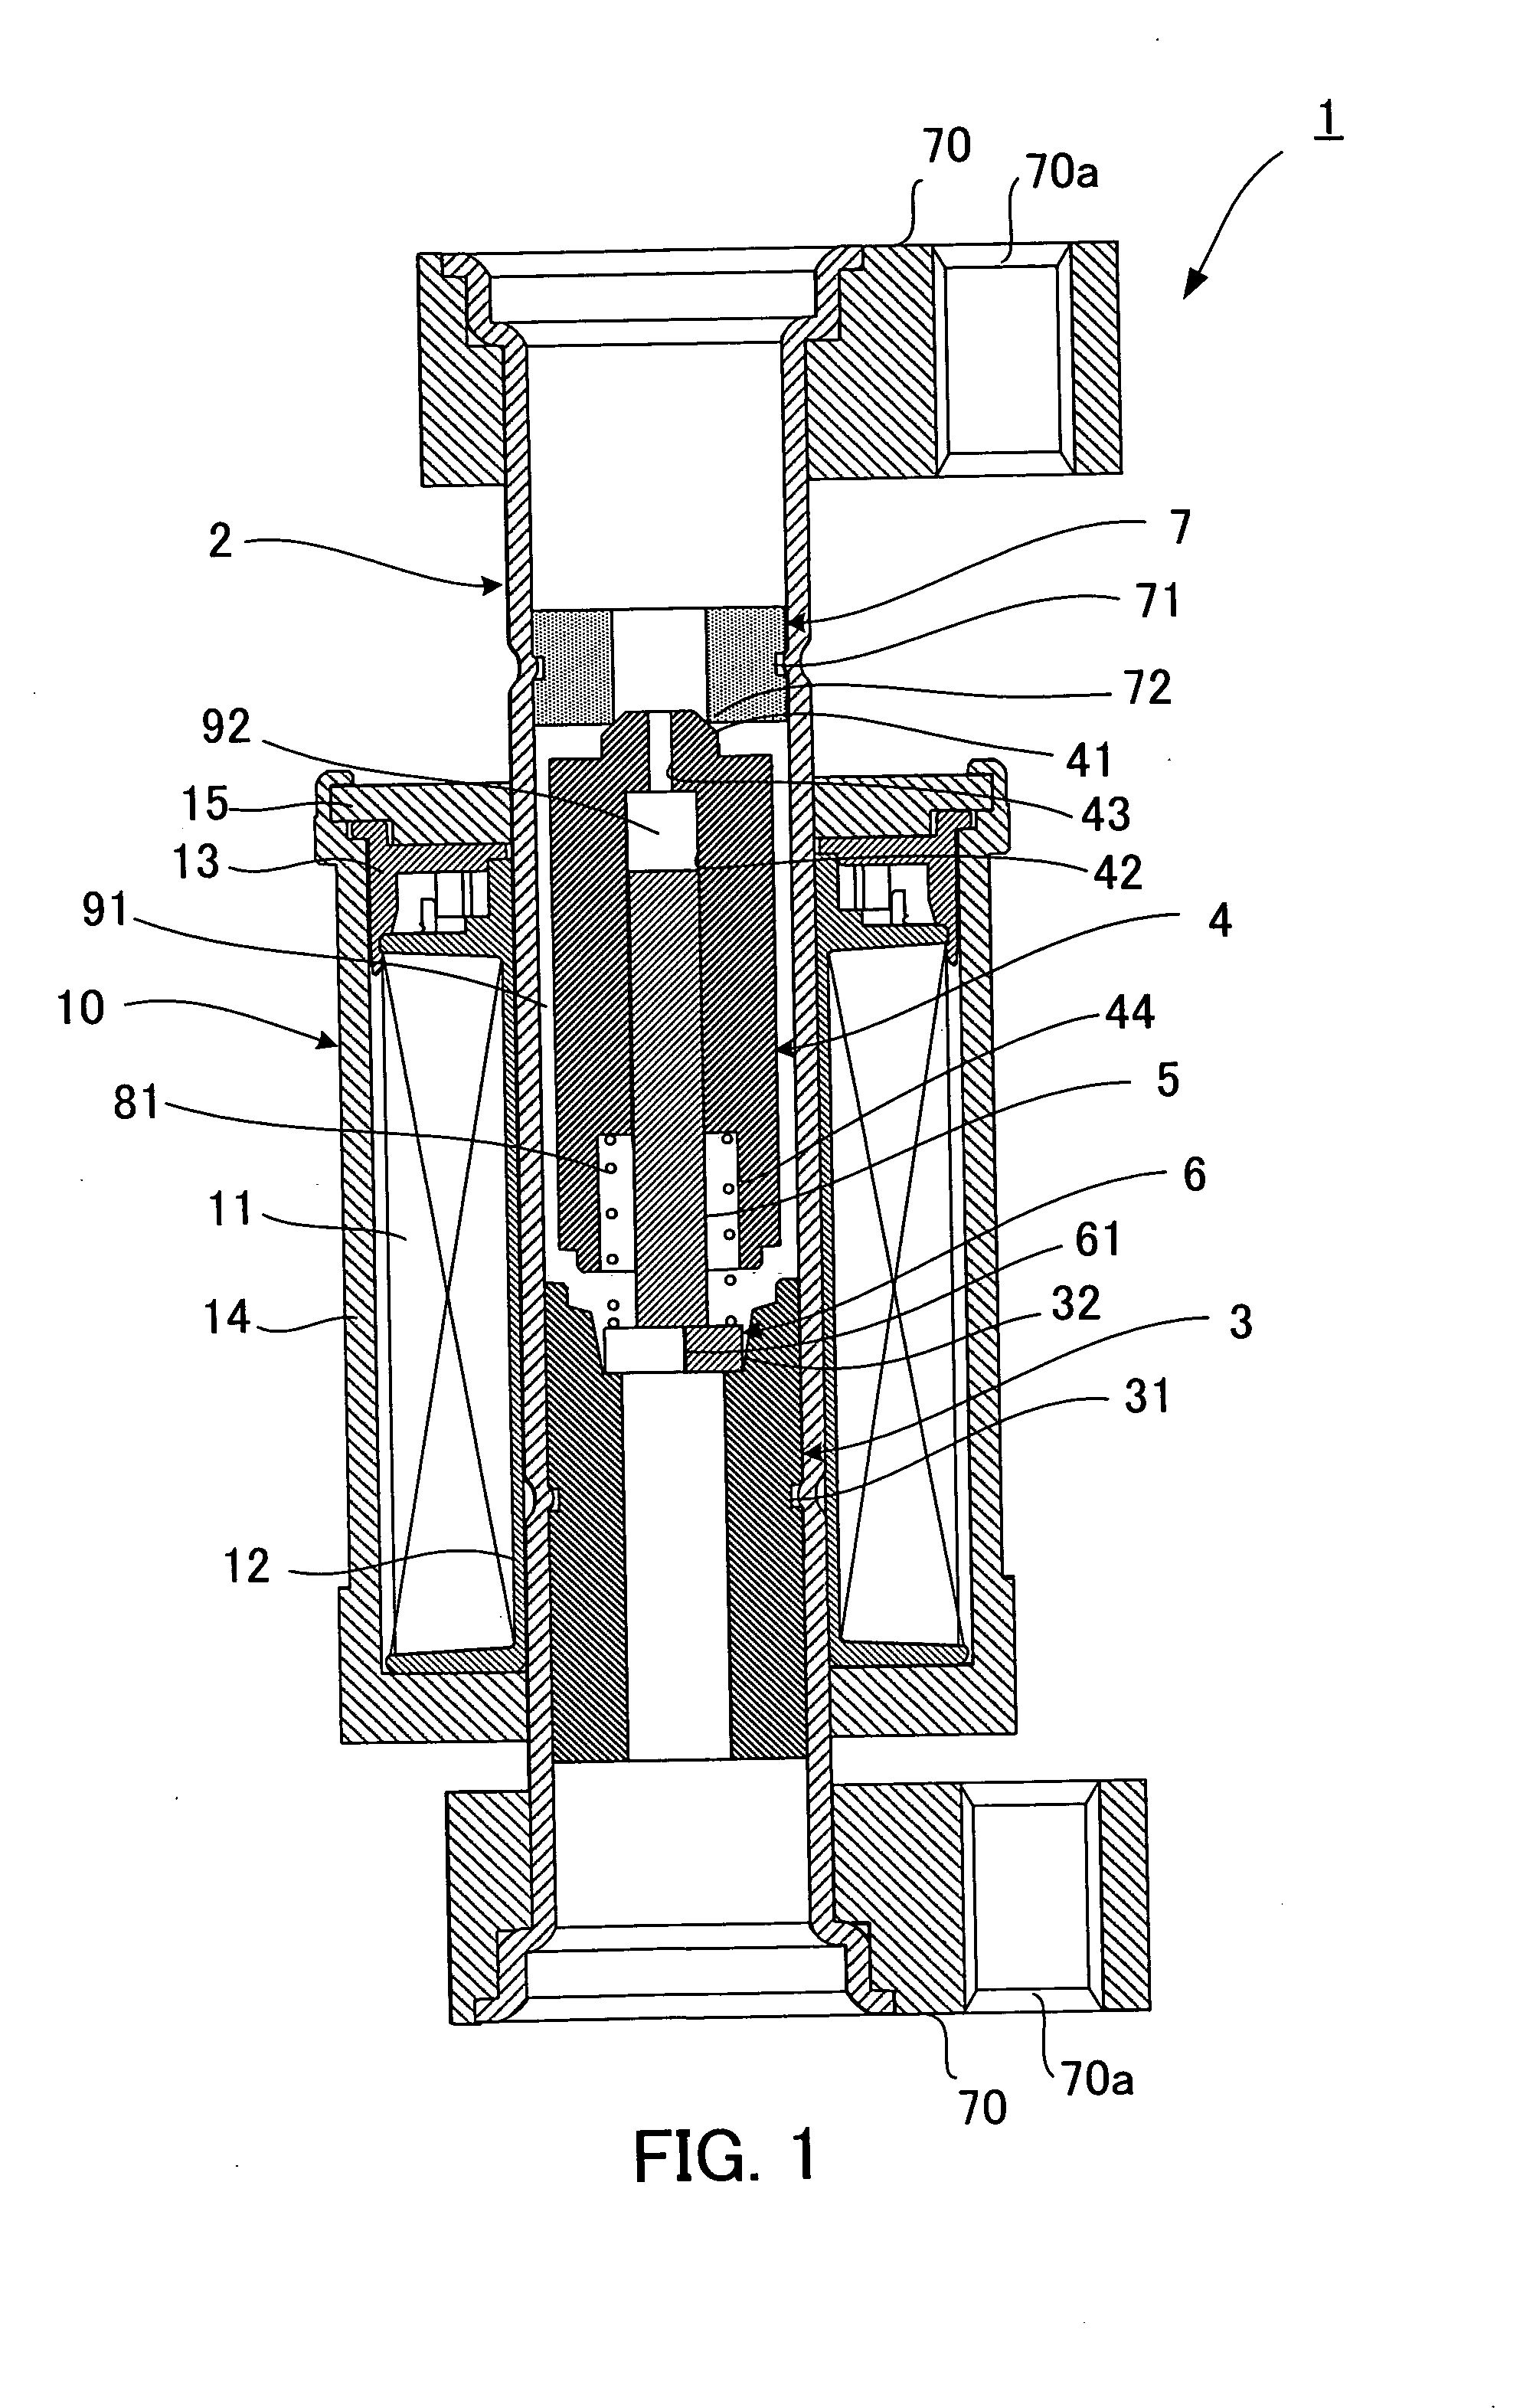 Constant differential pressure valve